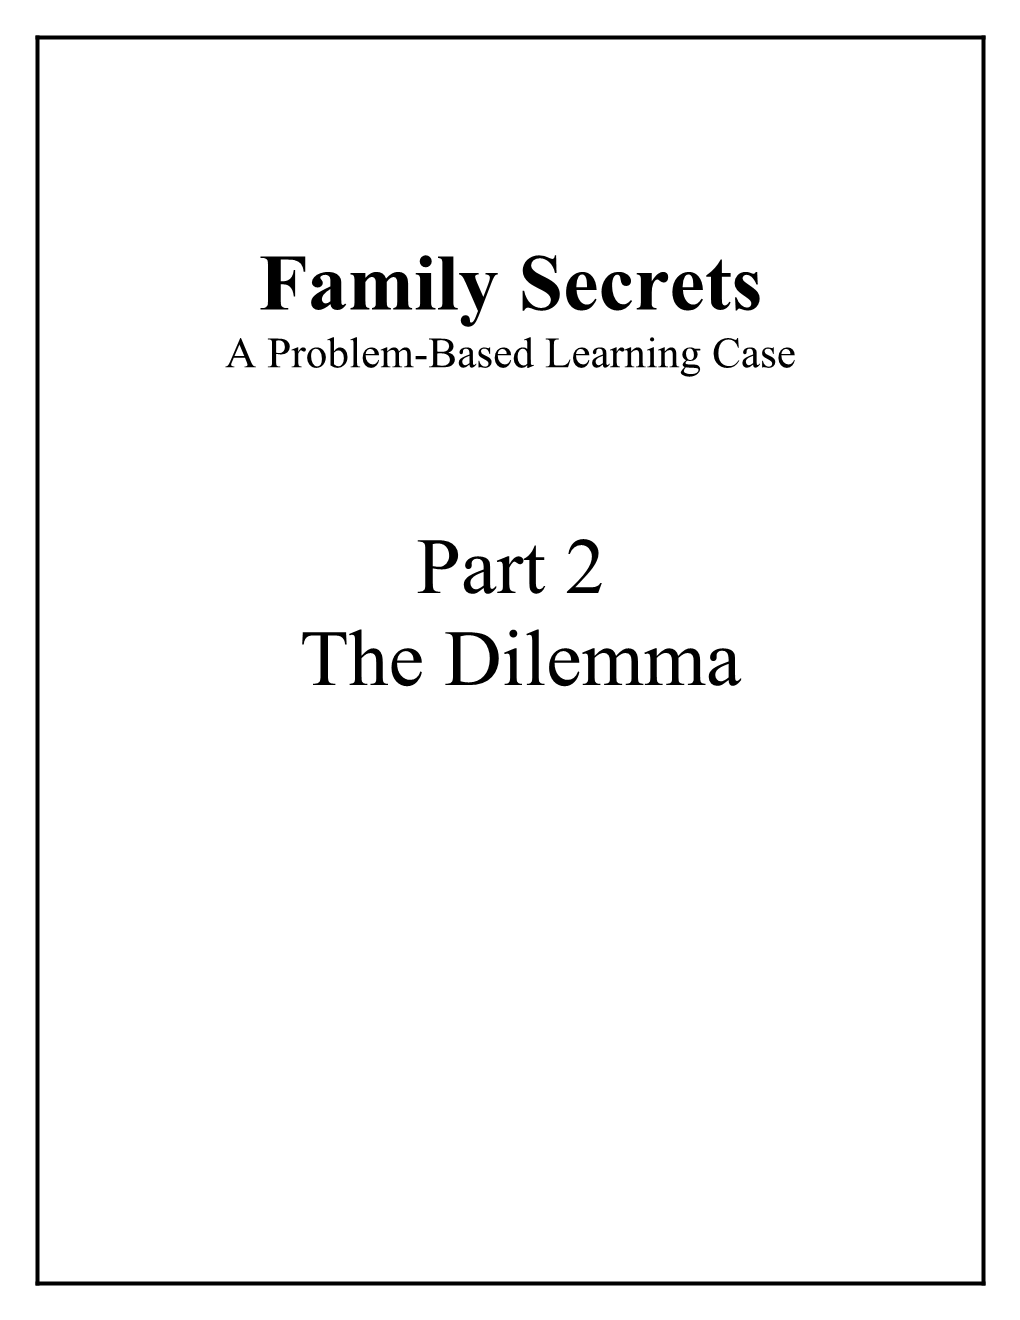 Part 2 Family Secrets